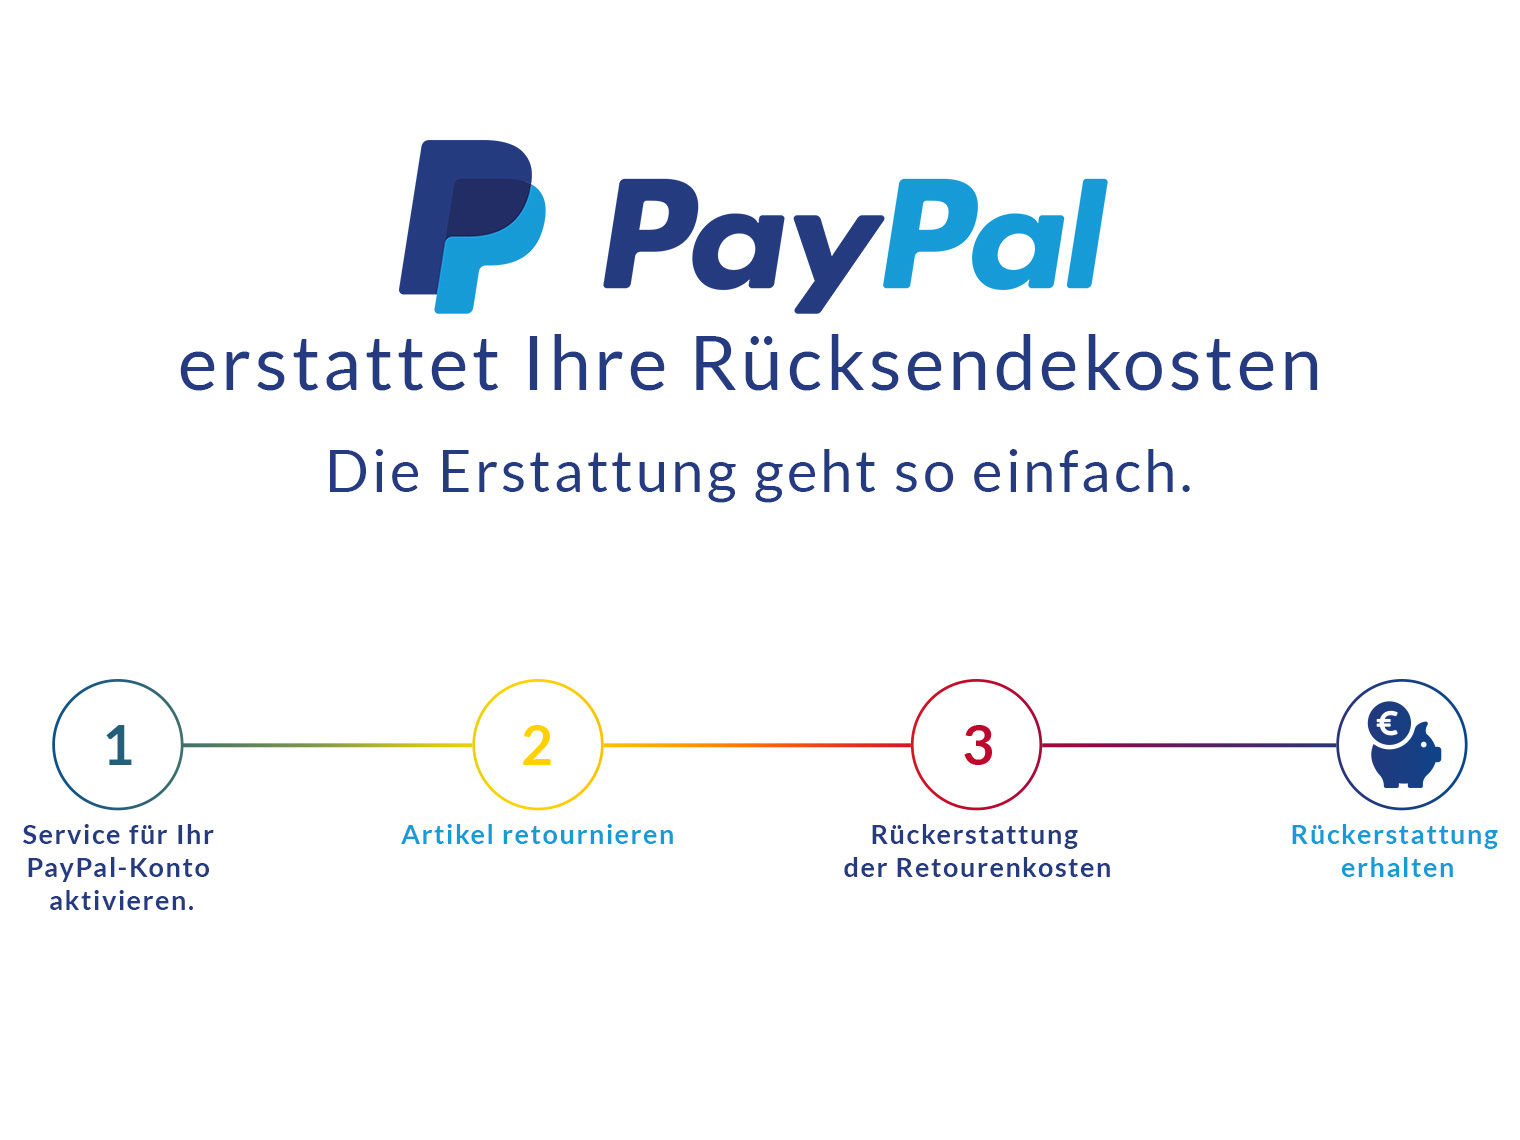 PayPal erstattet Ihre Rücksendekosten